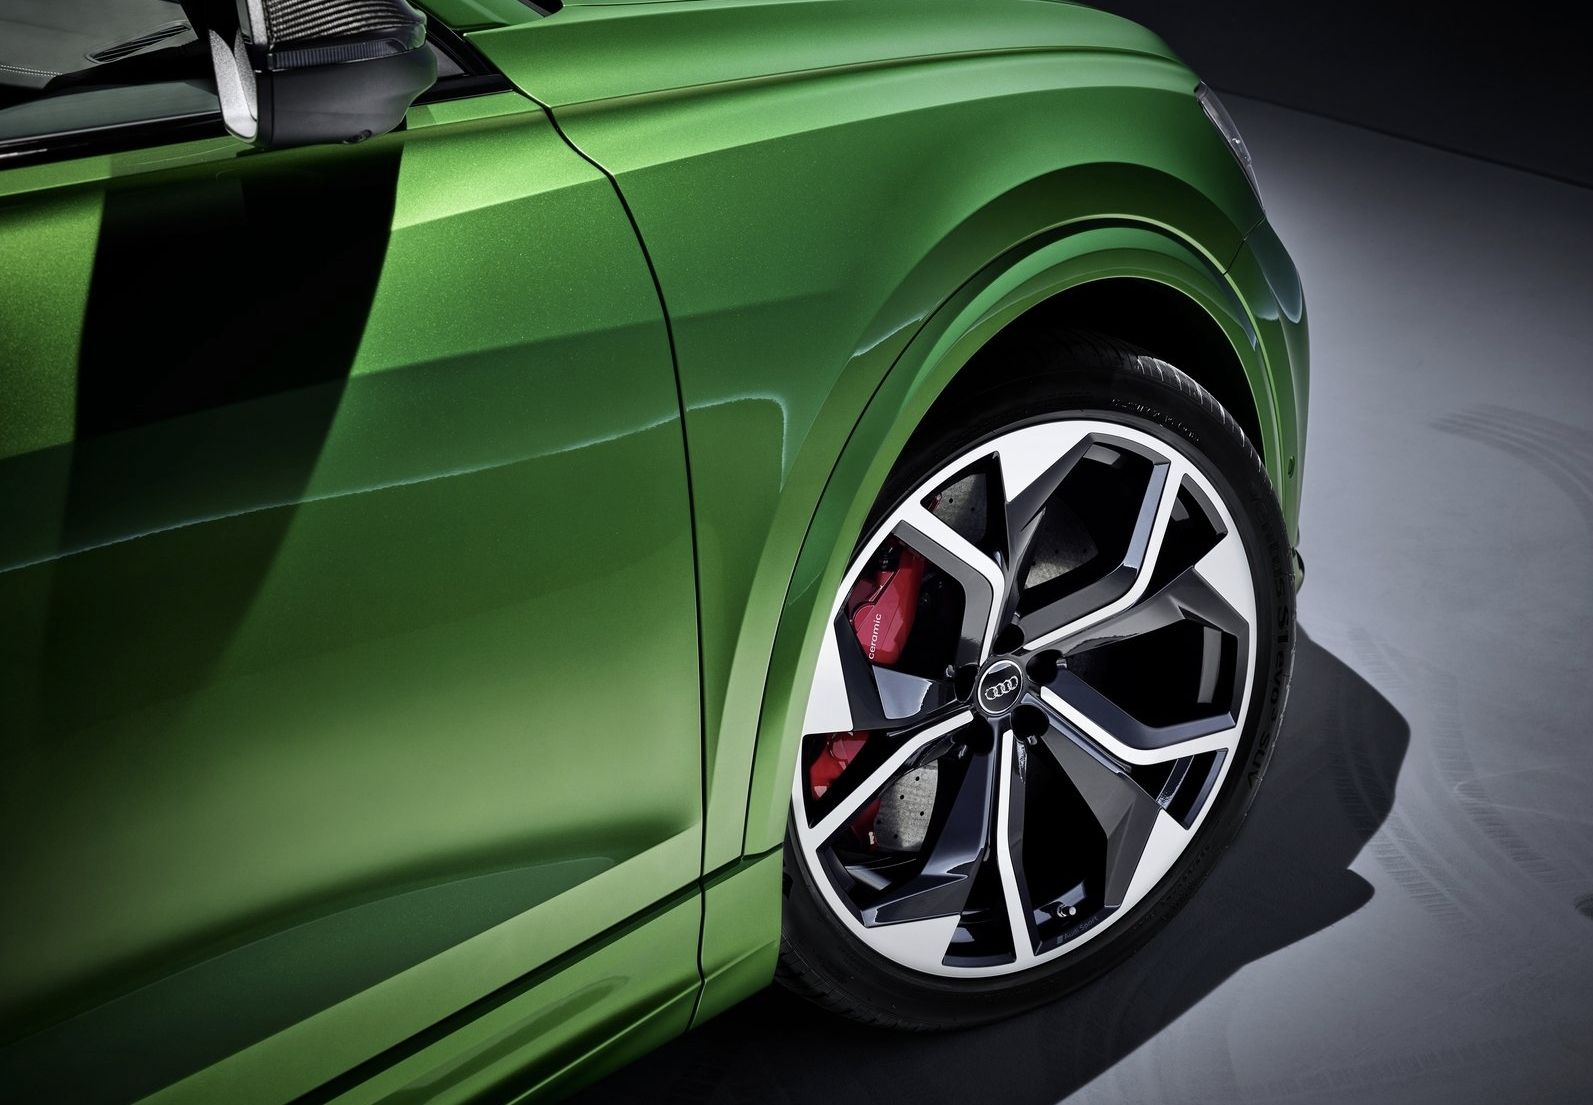 Šéf dizajnér Audi tvrdí, že 23-palcové kolesá sú úplne maximum. Nič väčšie nemá na autách zmysel